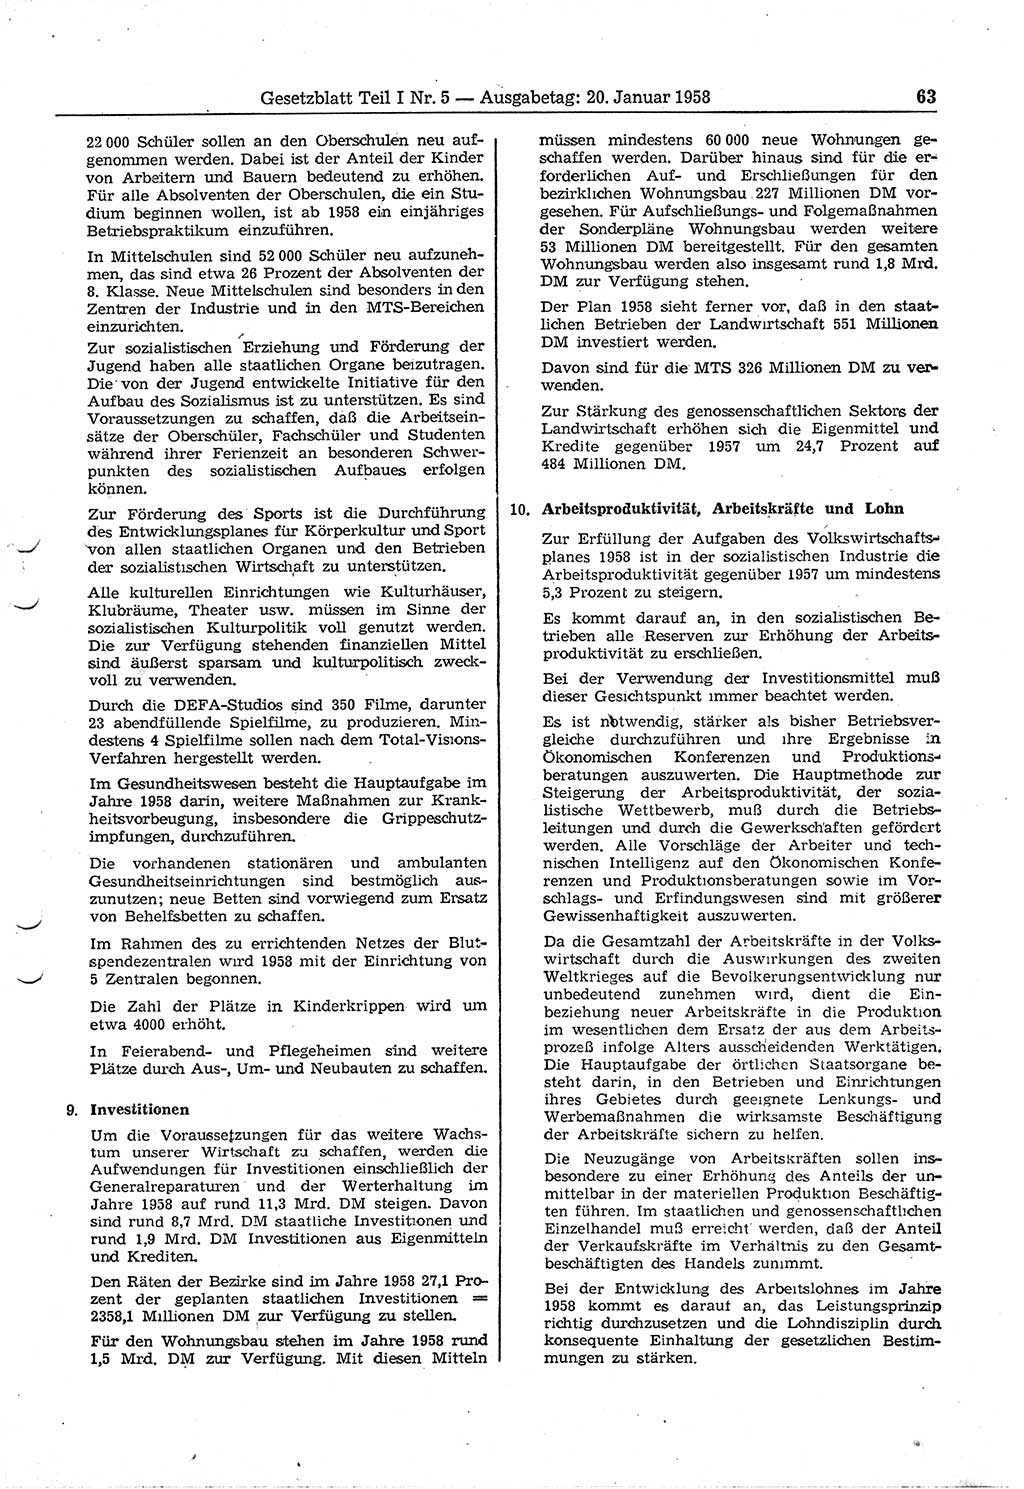 Gesetzblatt (GBl.) der Deutschen Demokratischen Republik (DDR) Teil Ⅰ 1958, Seite 63 (GBl. DDR Ⅰ 1958, S. 63)